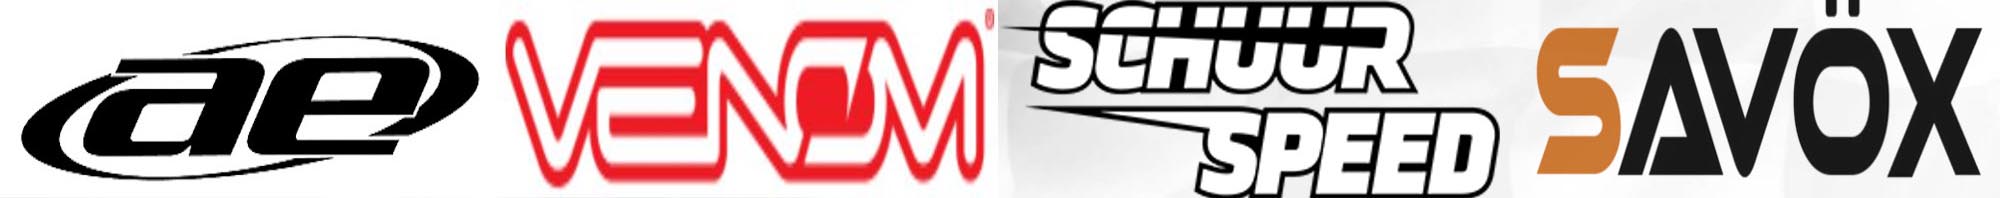 ae, Venom, Schuur Speed, Savox logos